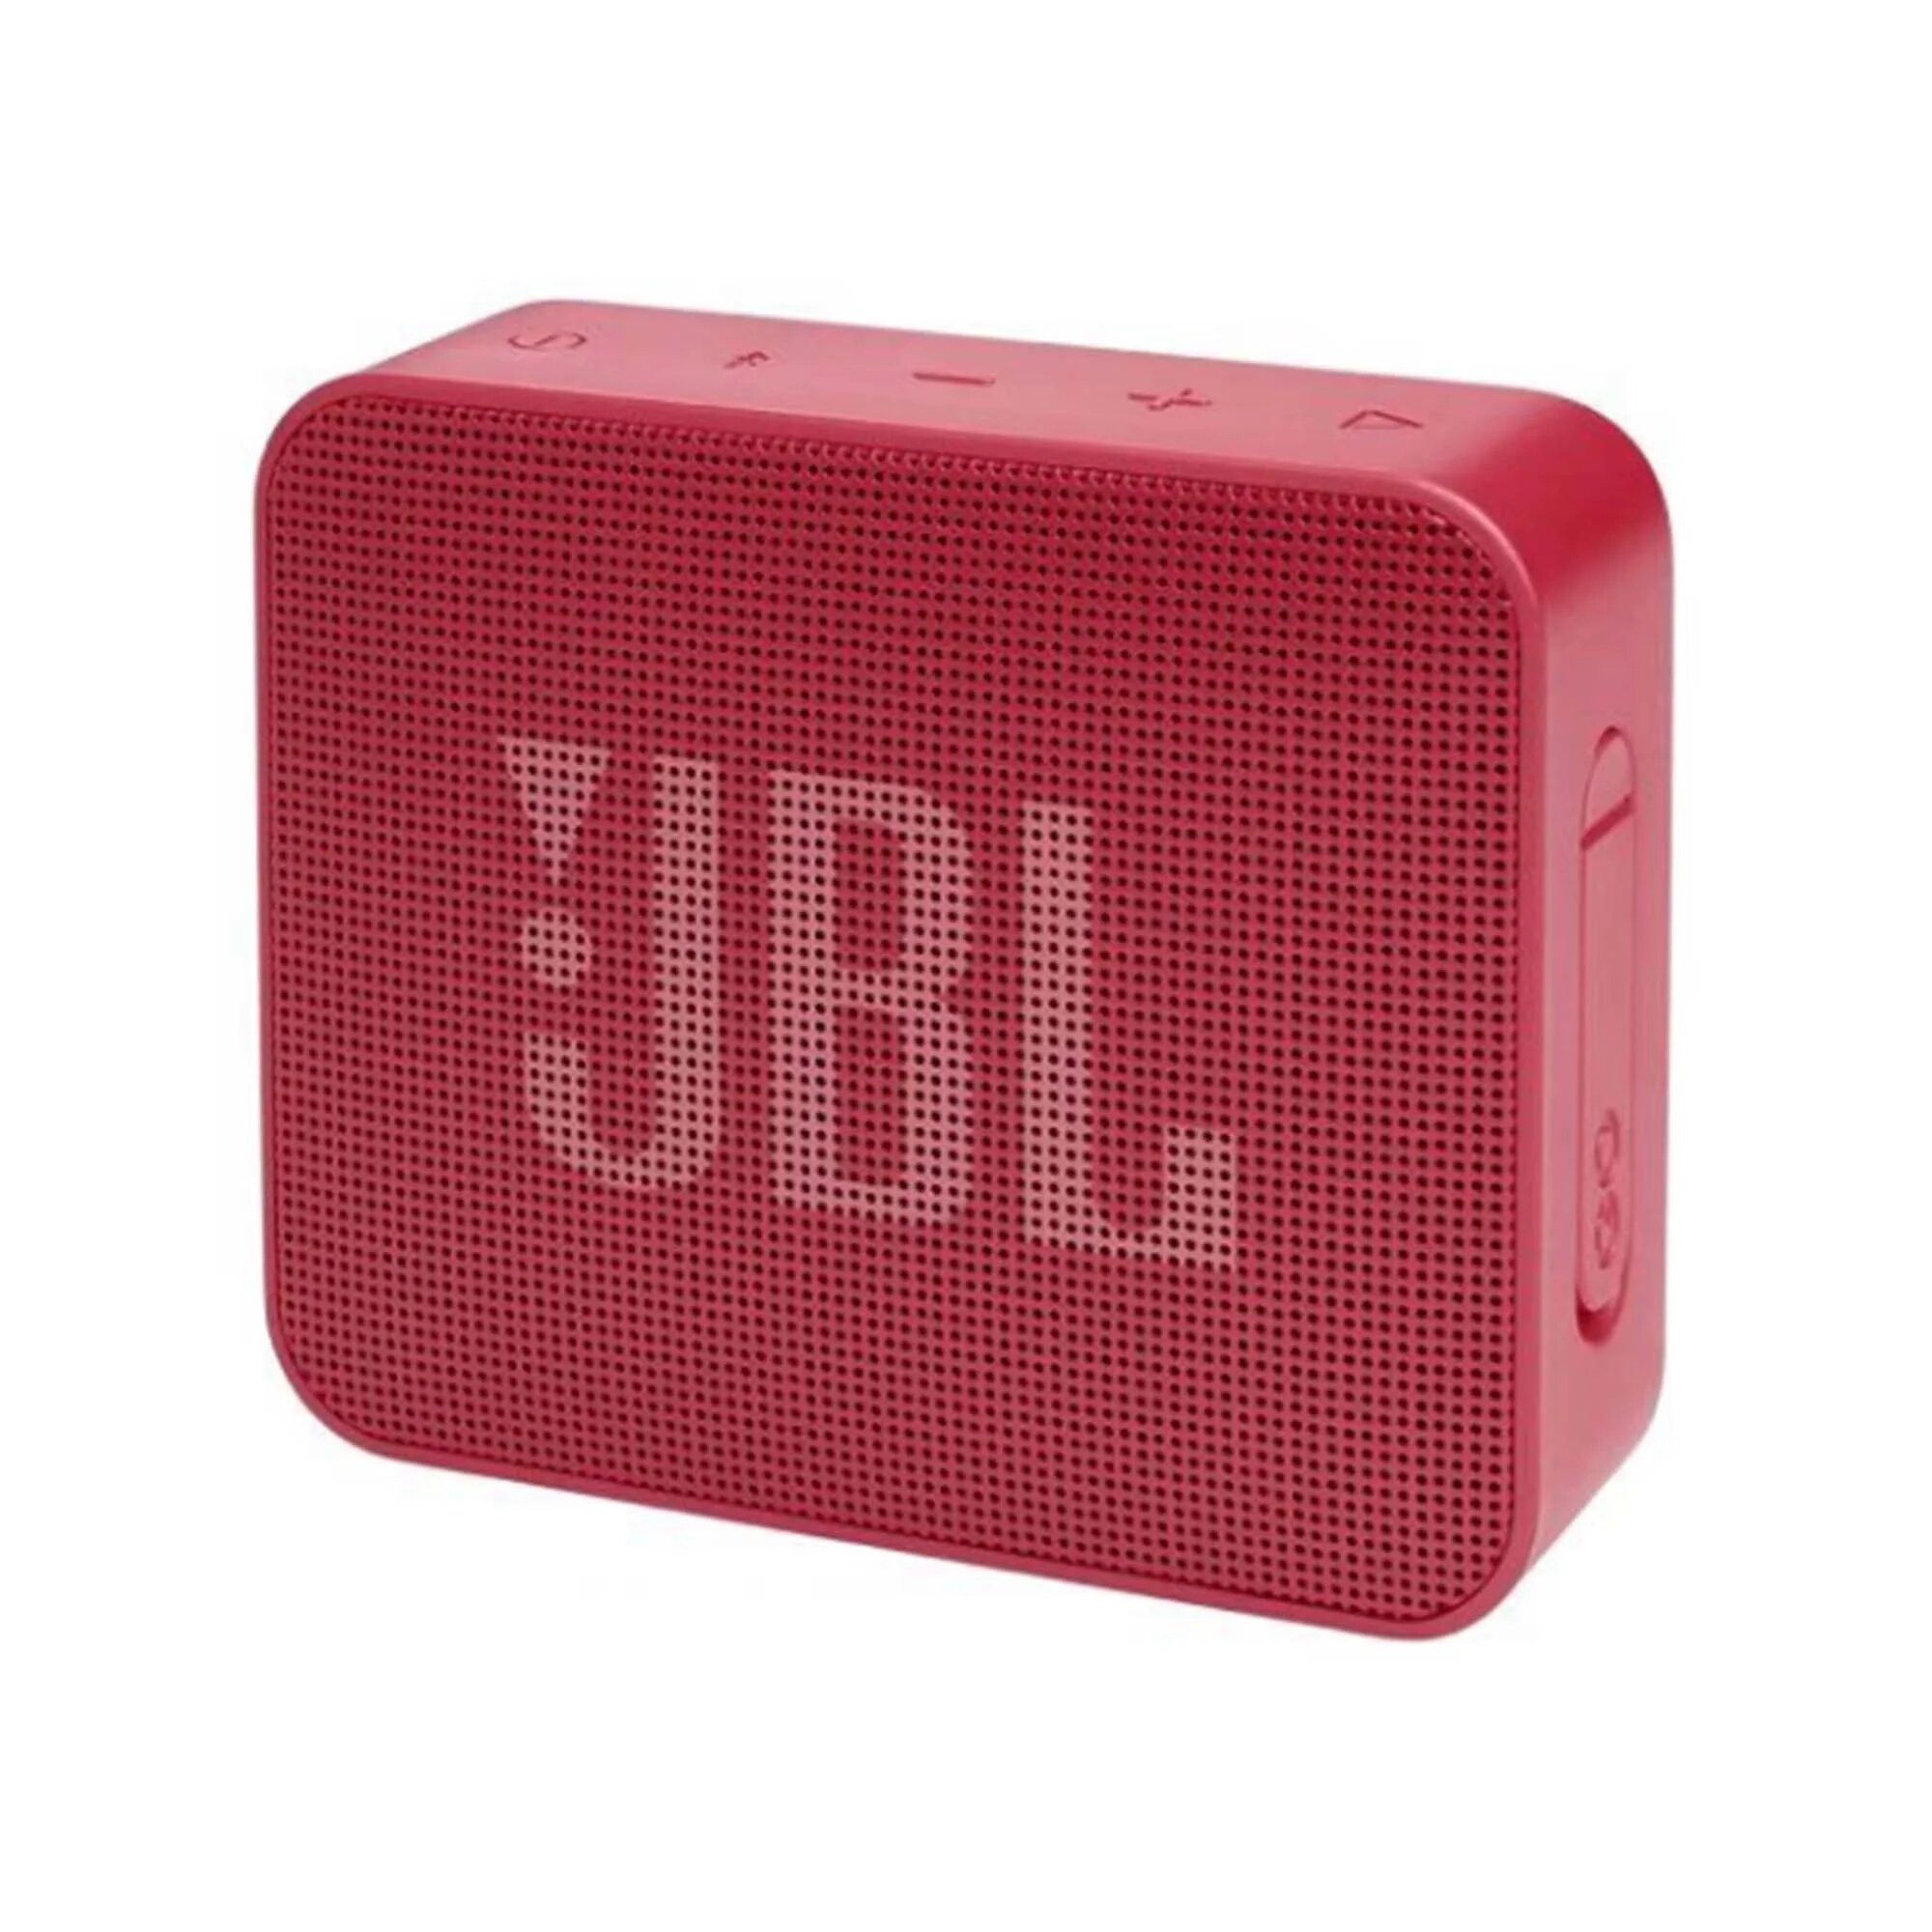 Портативная акустика JBL Go Essential Red портативная акустика jbl go essential red